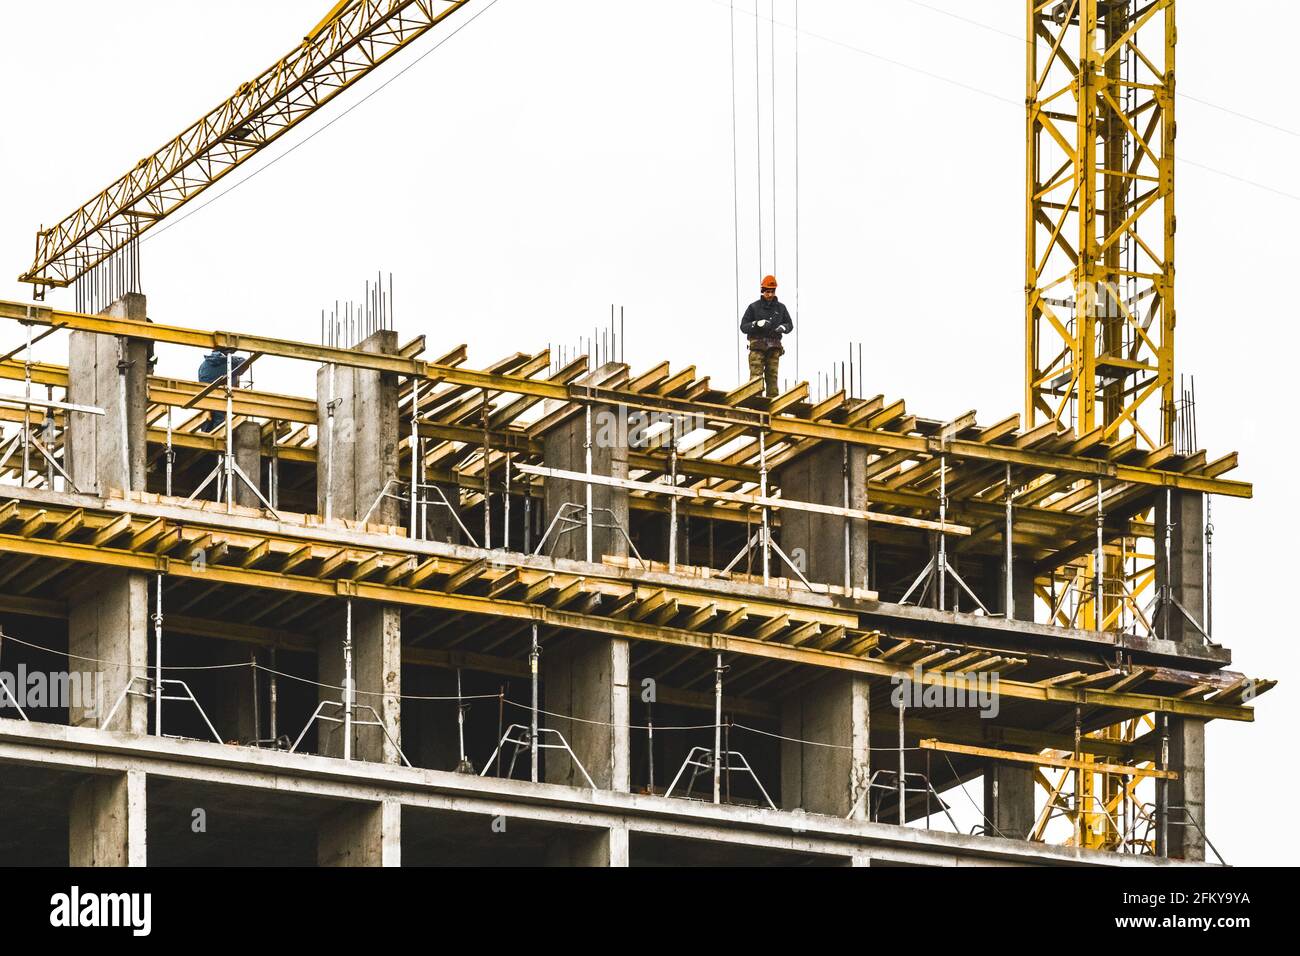 Bielorussia, Minsk - 06 marzo 2020: Un costruttore si trova sul bordo di un edificio in costruzione, una professione pericolosa. Foto Stock